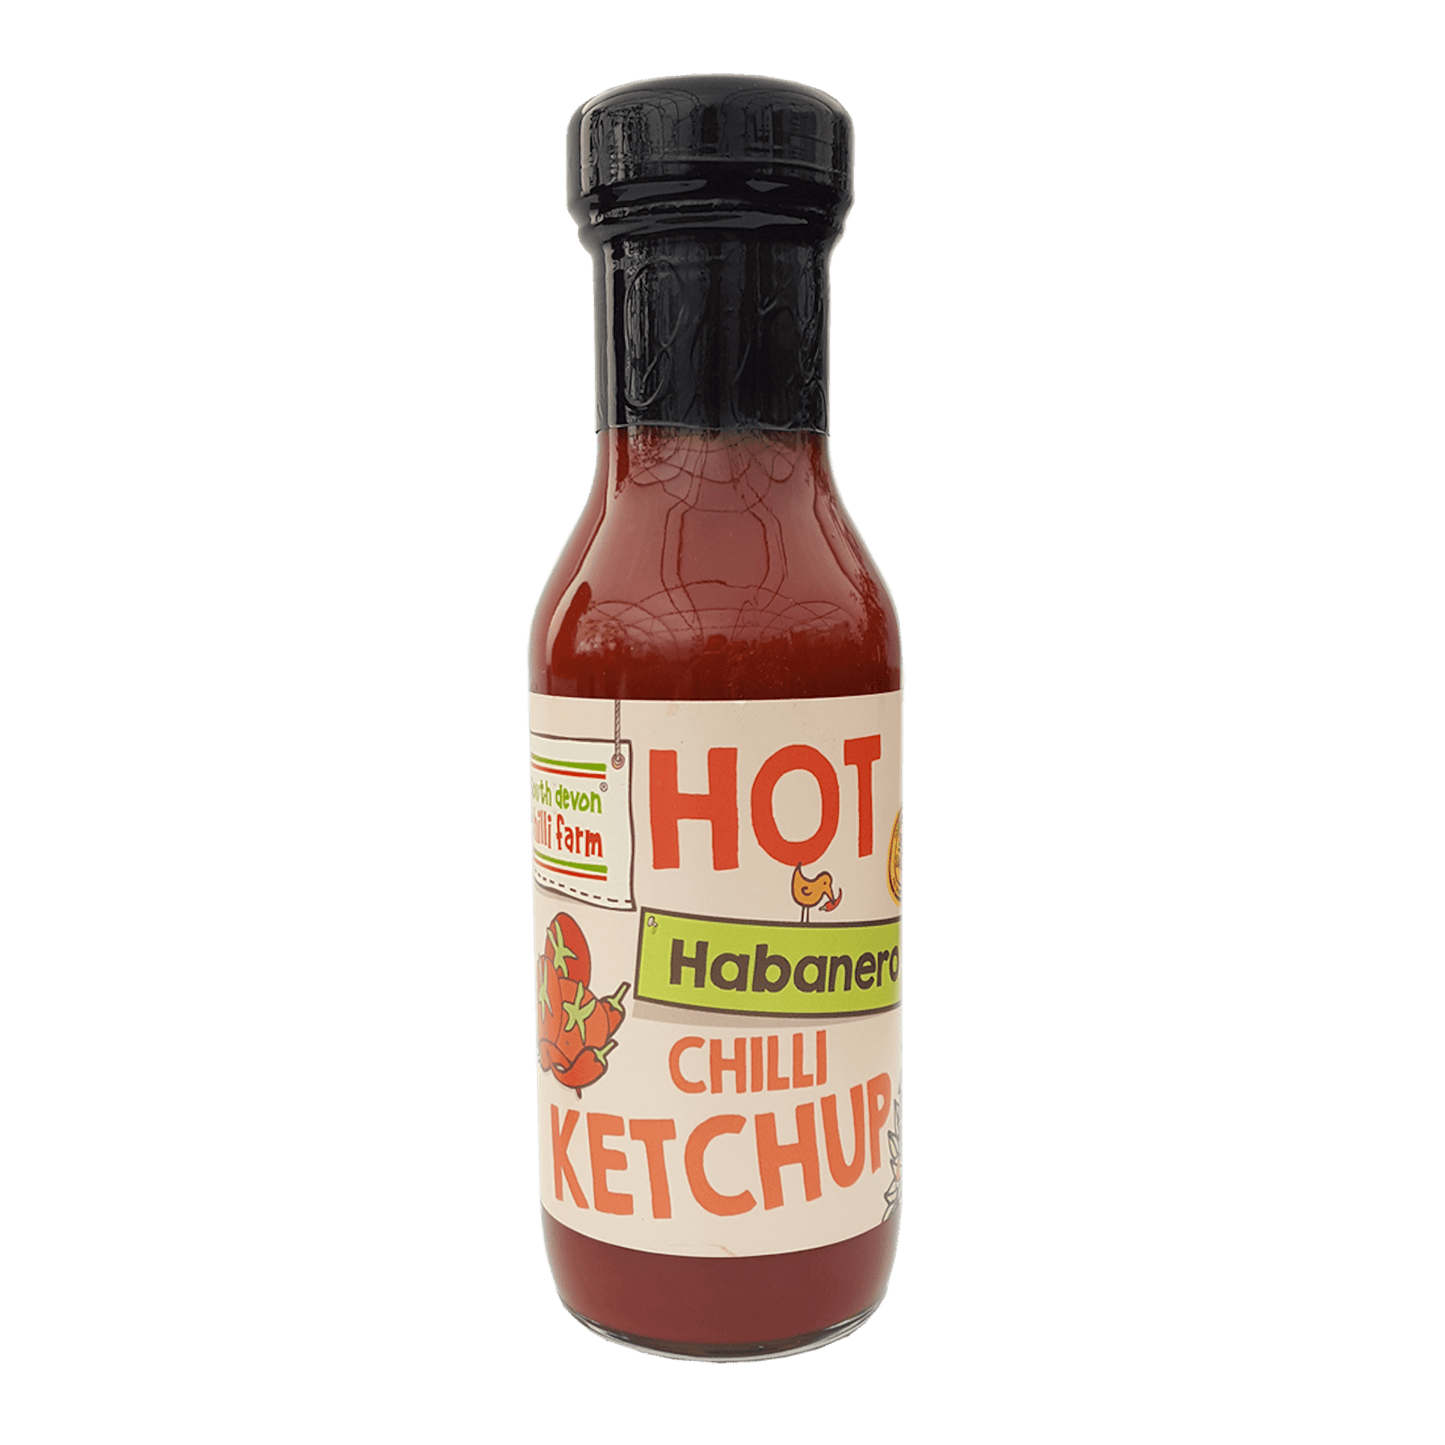 Hot Habanero Chilli Ketchup (280g)